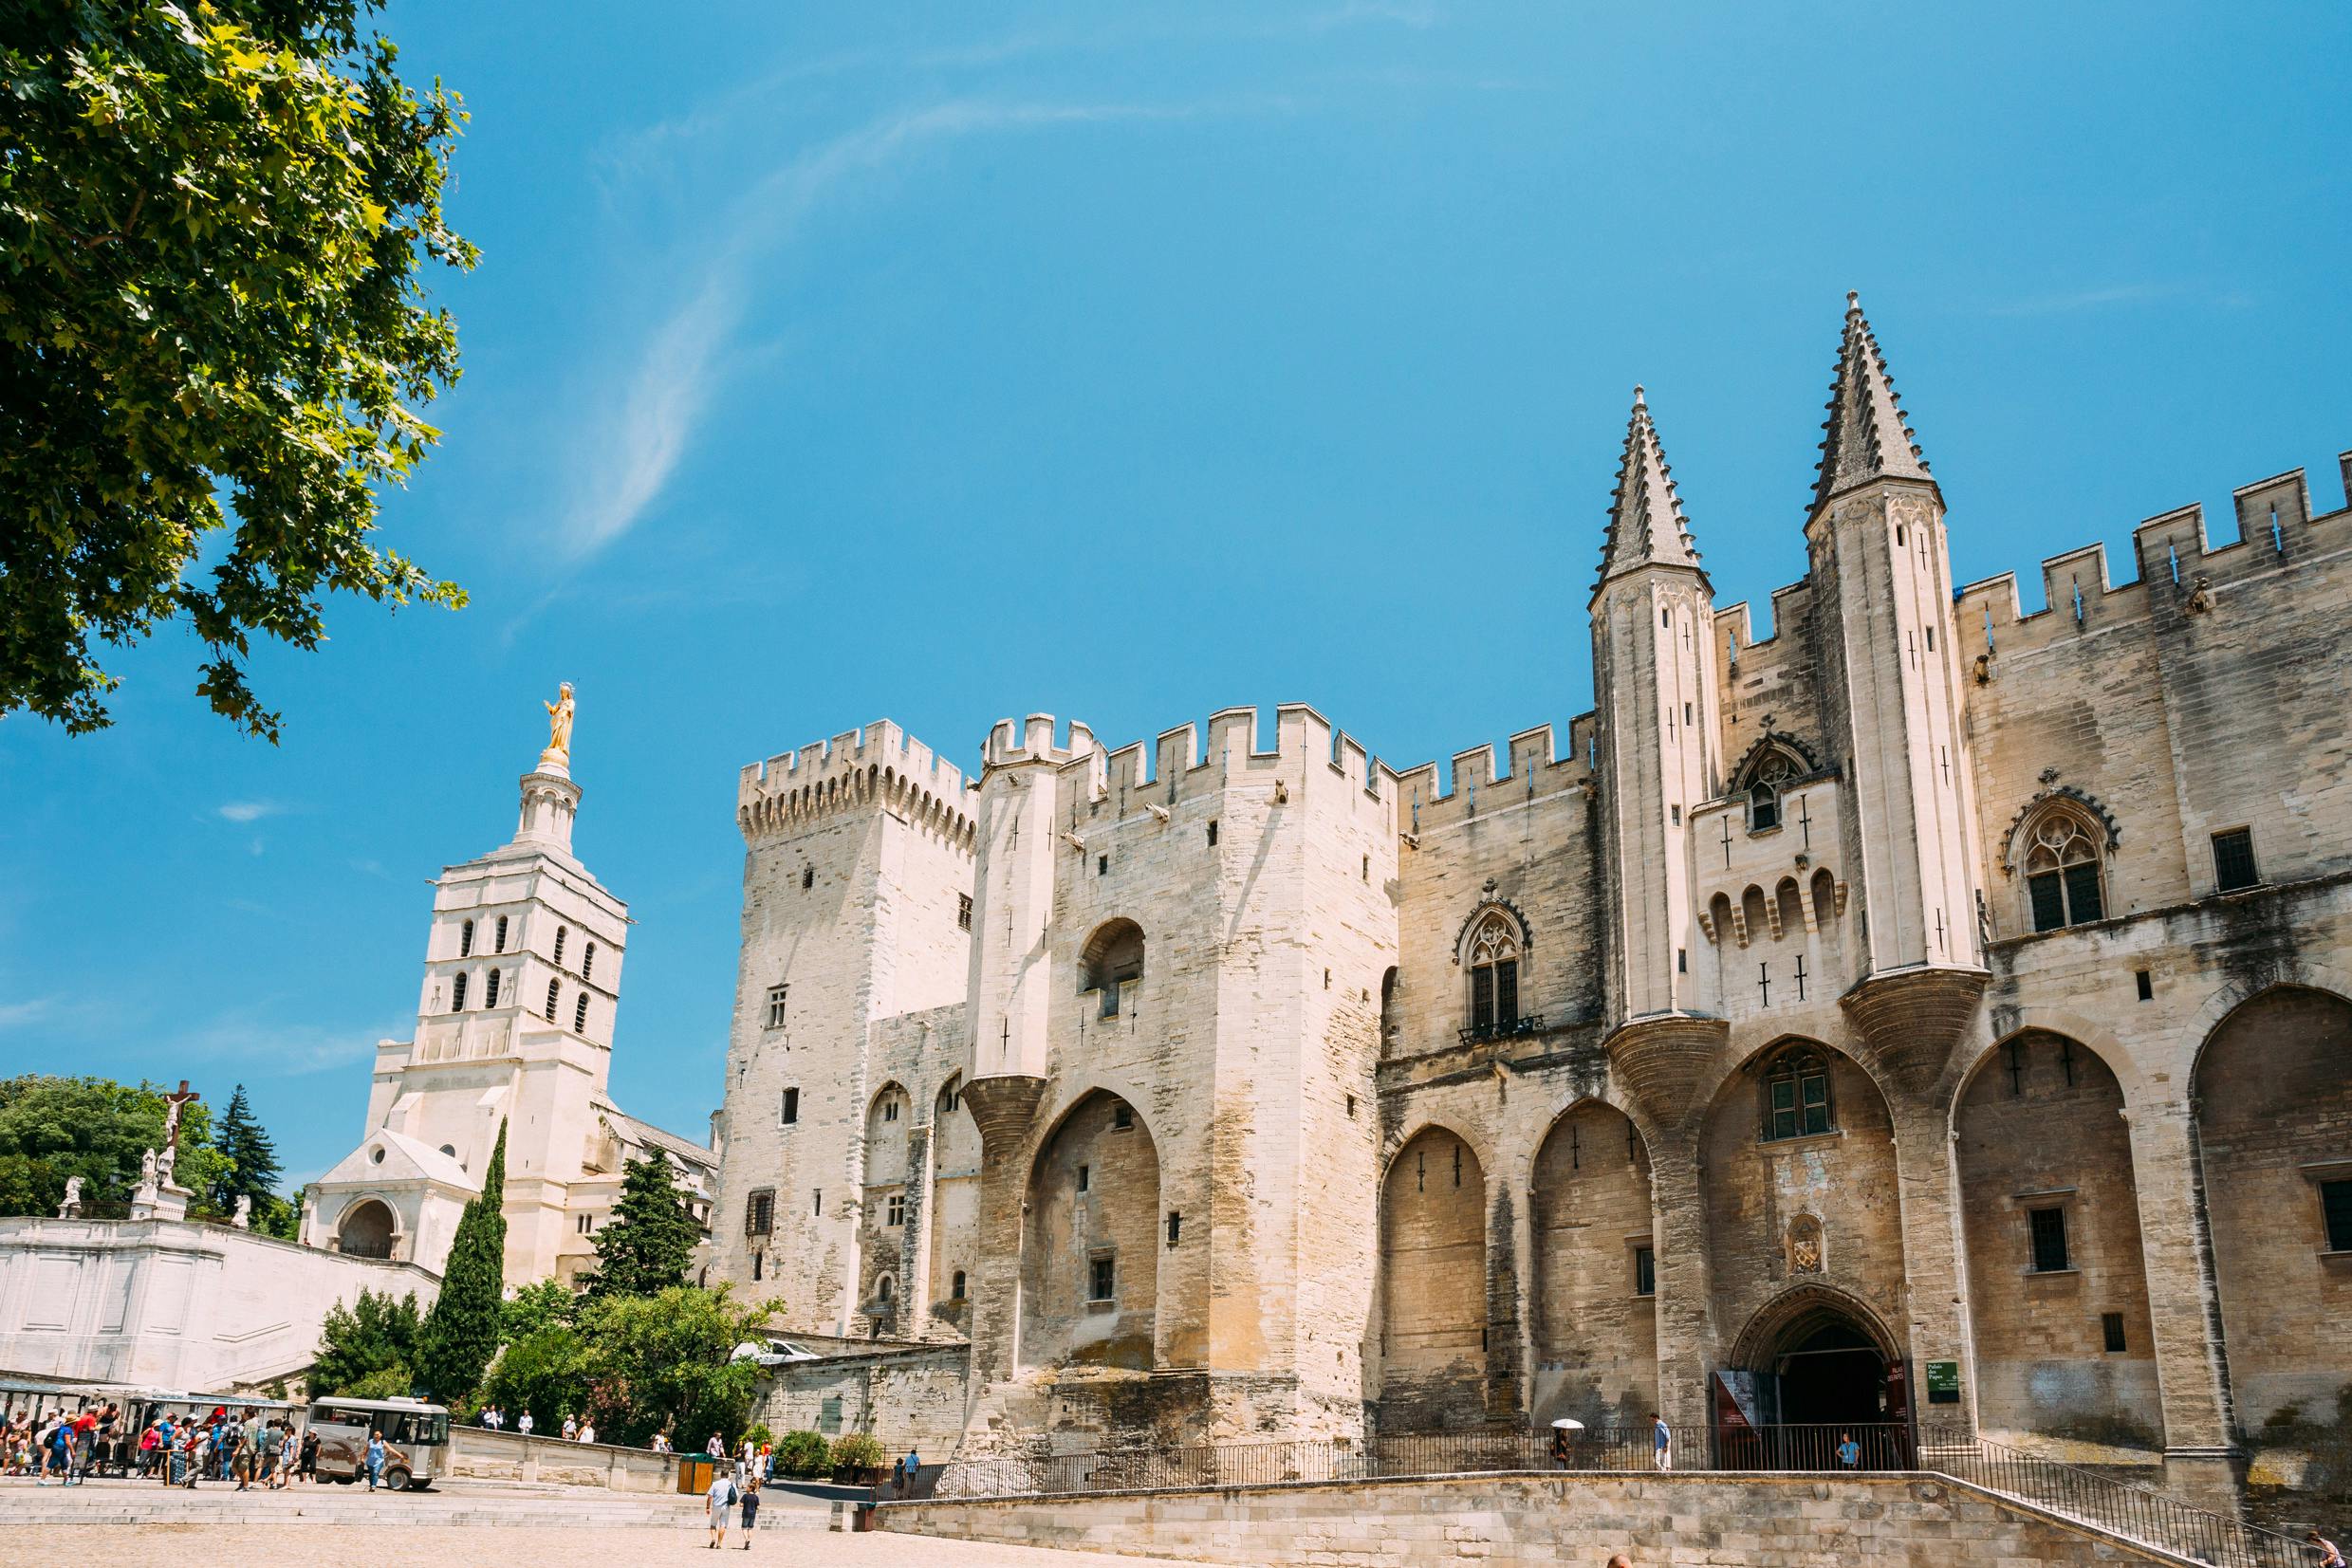 Volledige dagtour door Avignon, Châteauneuf-du-Pape en Les Baux de Provence